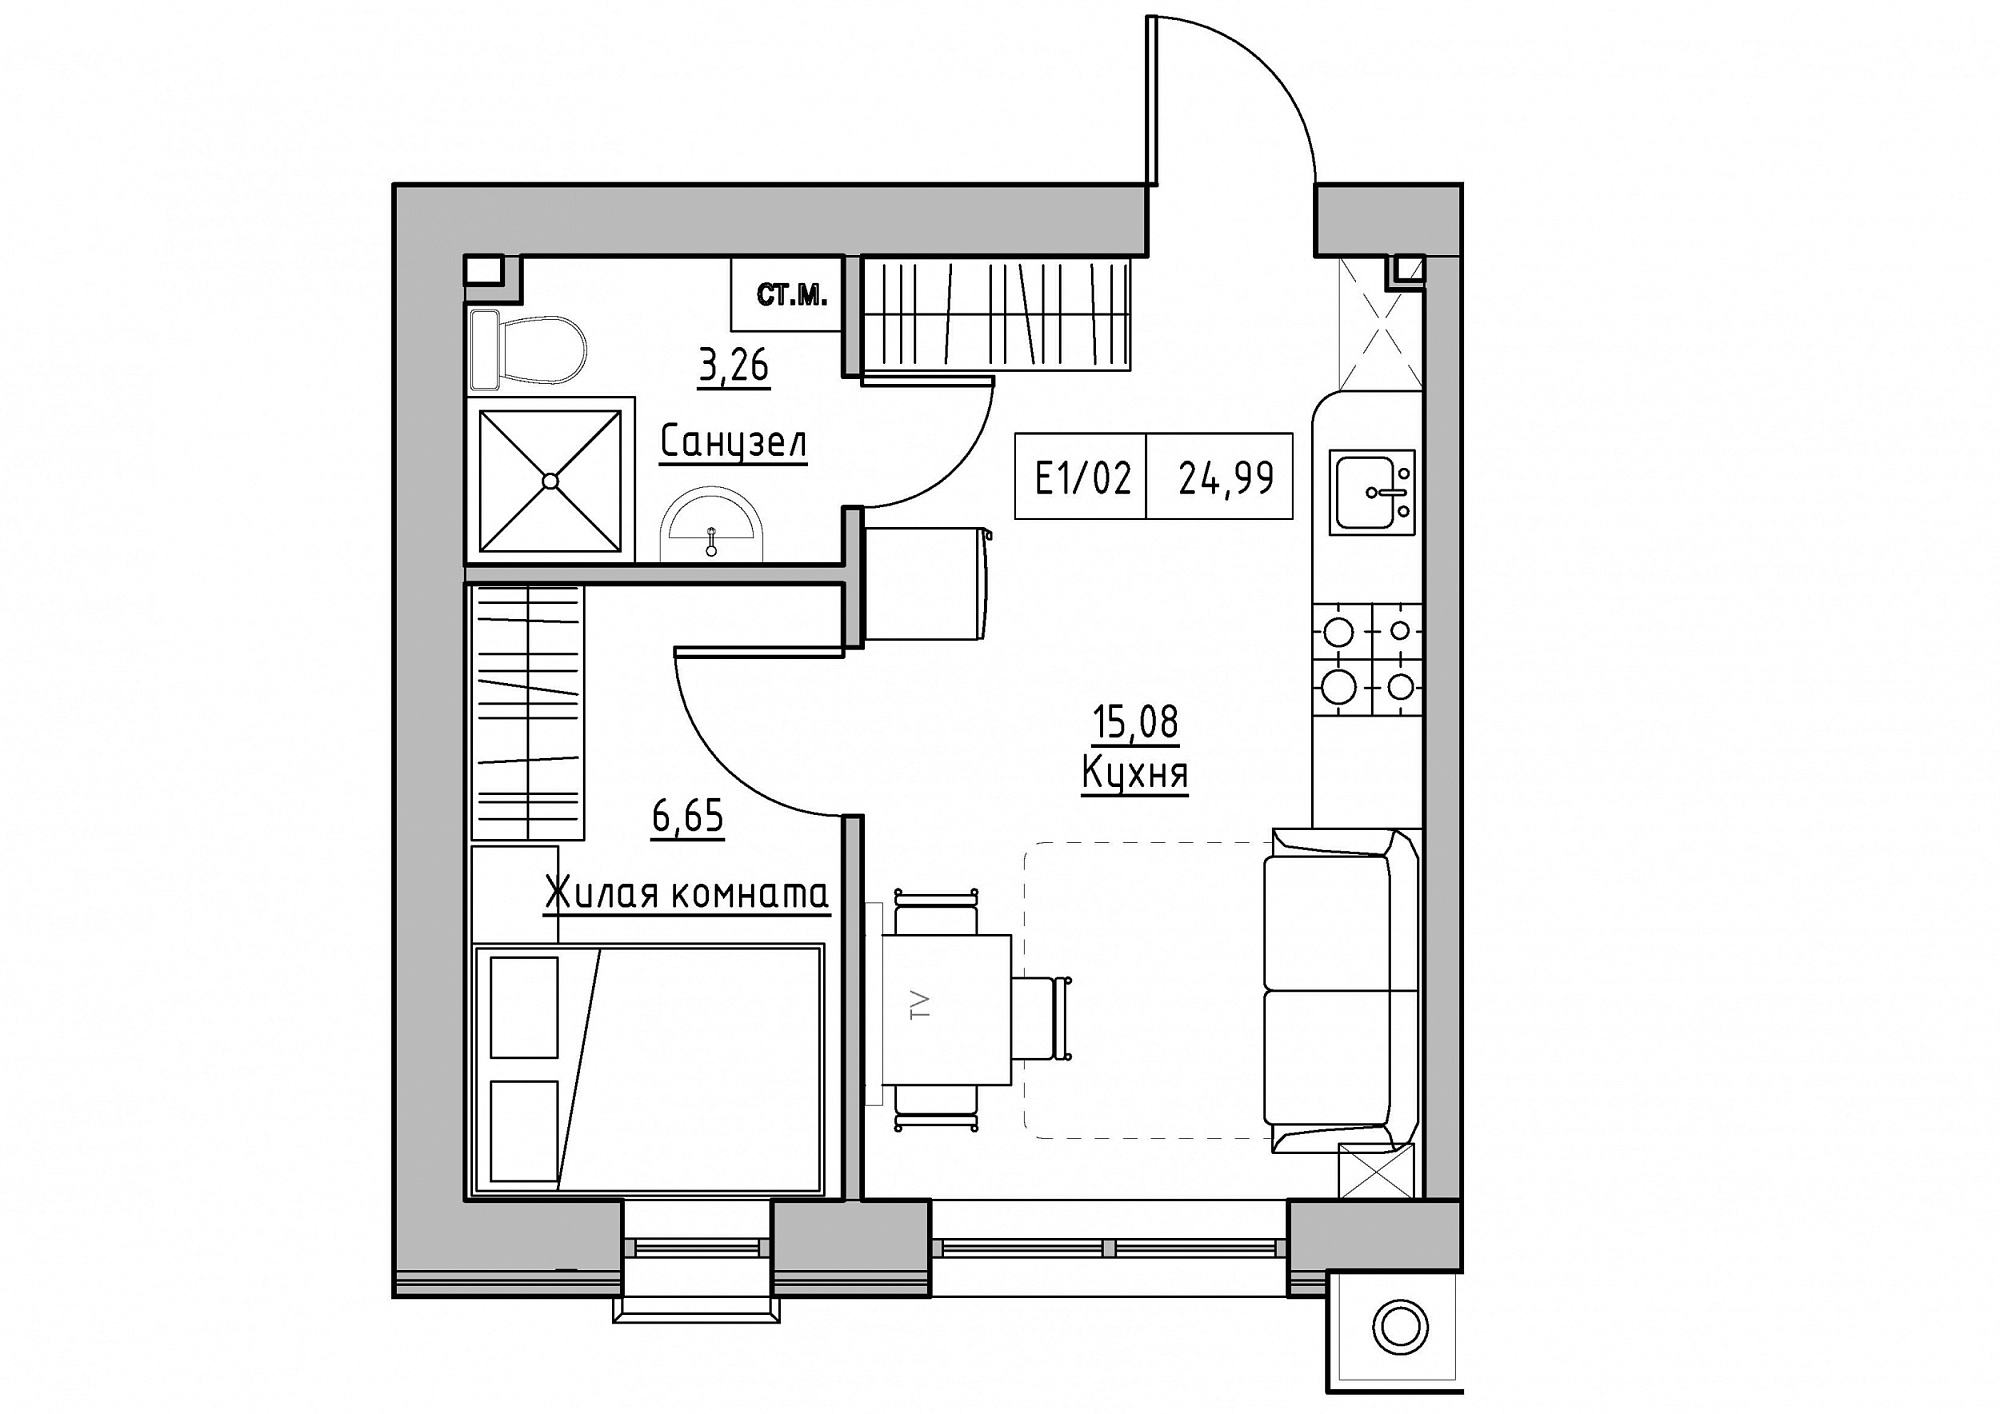 Планировка 1-к квартира площей 24.99м2, KS-011-02/0012.